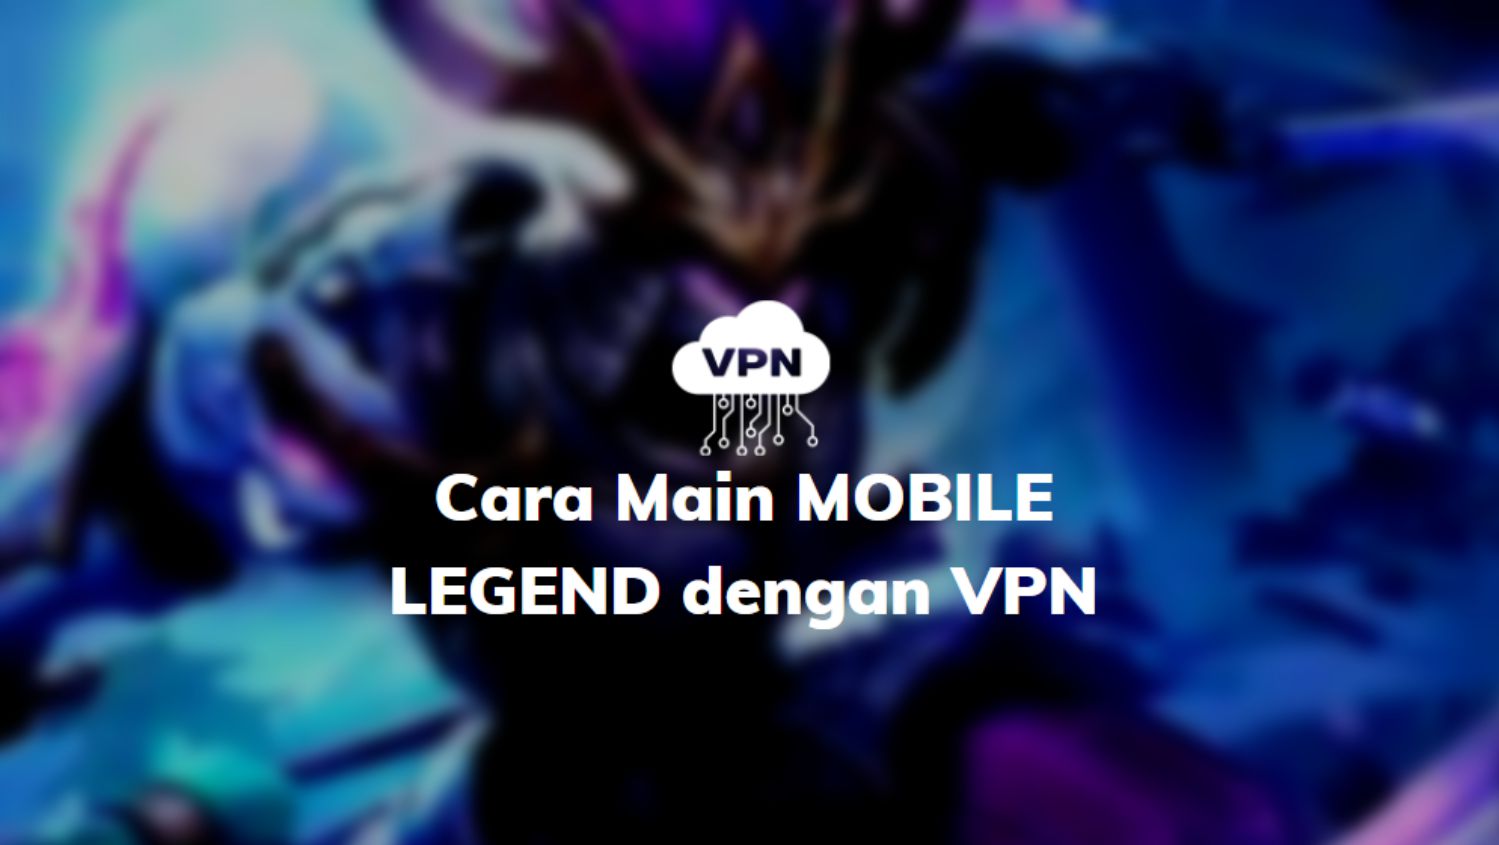 Cara Menggunakan Vpn Mobile Legend. √ Cara main Mobile Legends Dengan VPN Anti Lag terbaru 2022